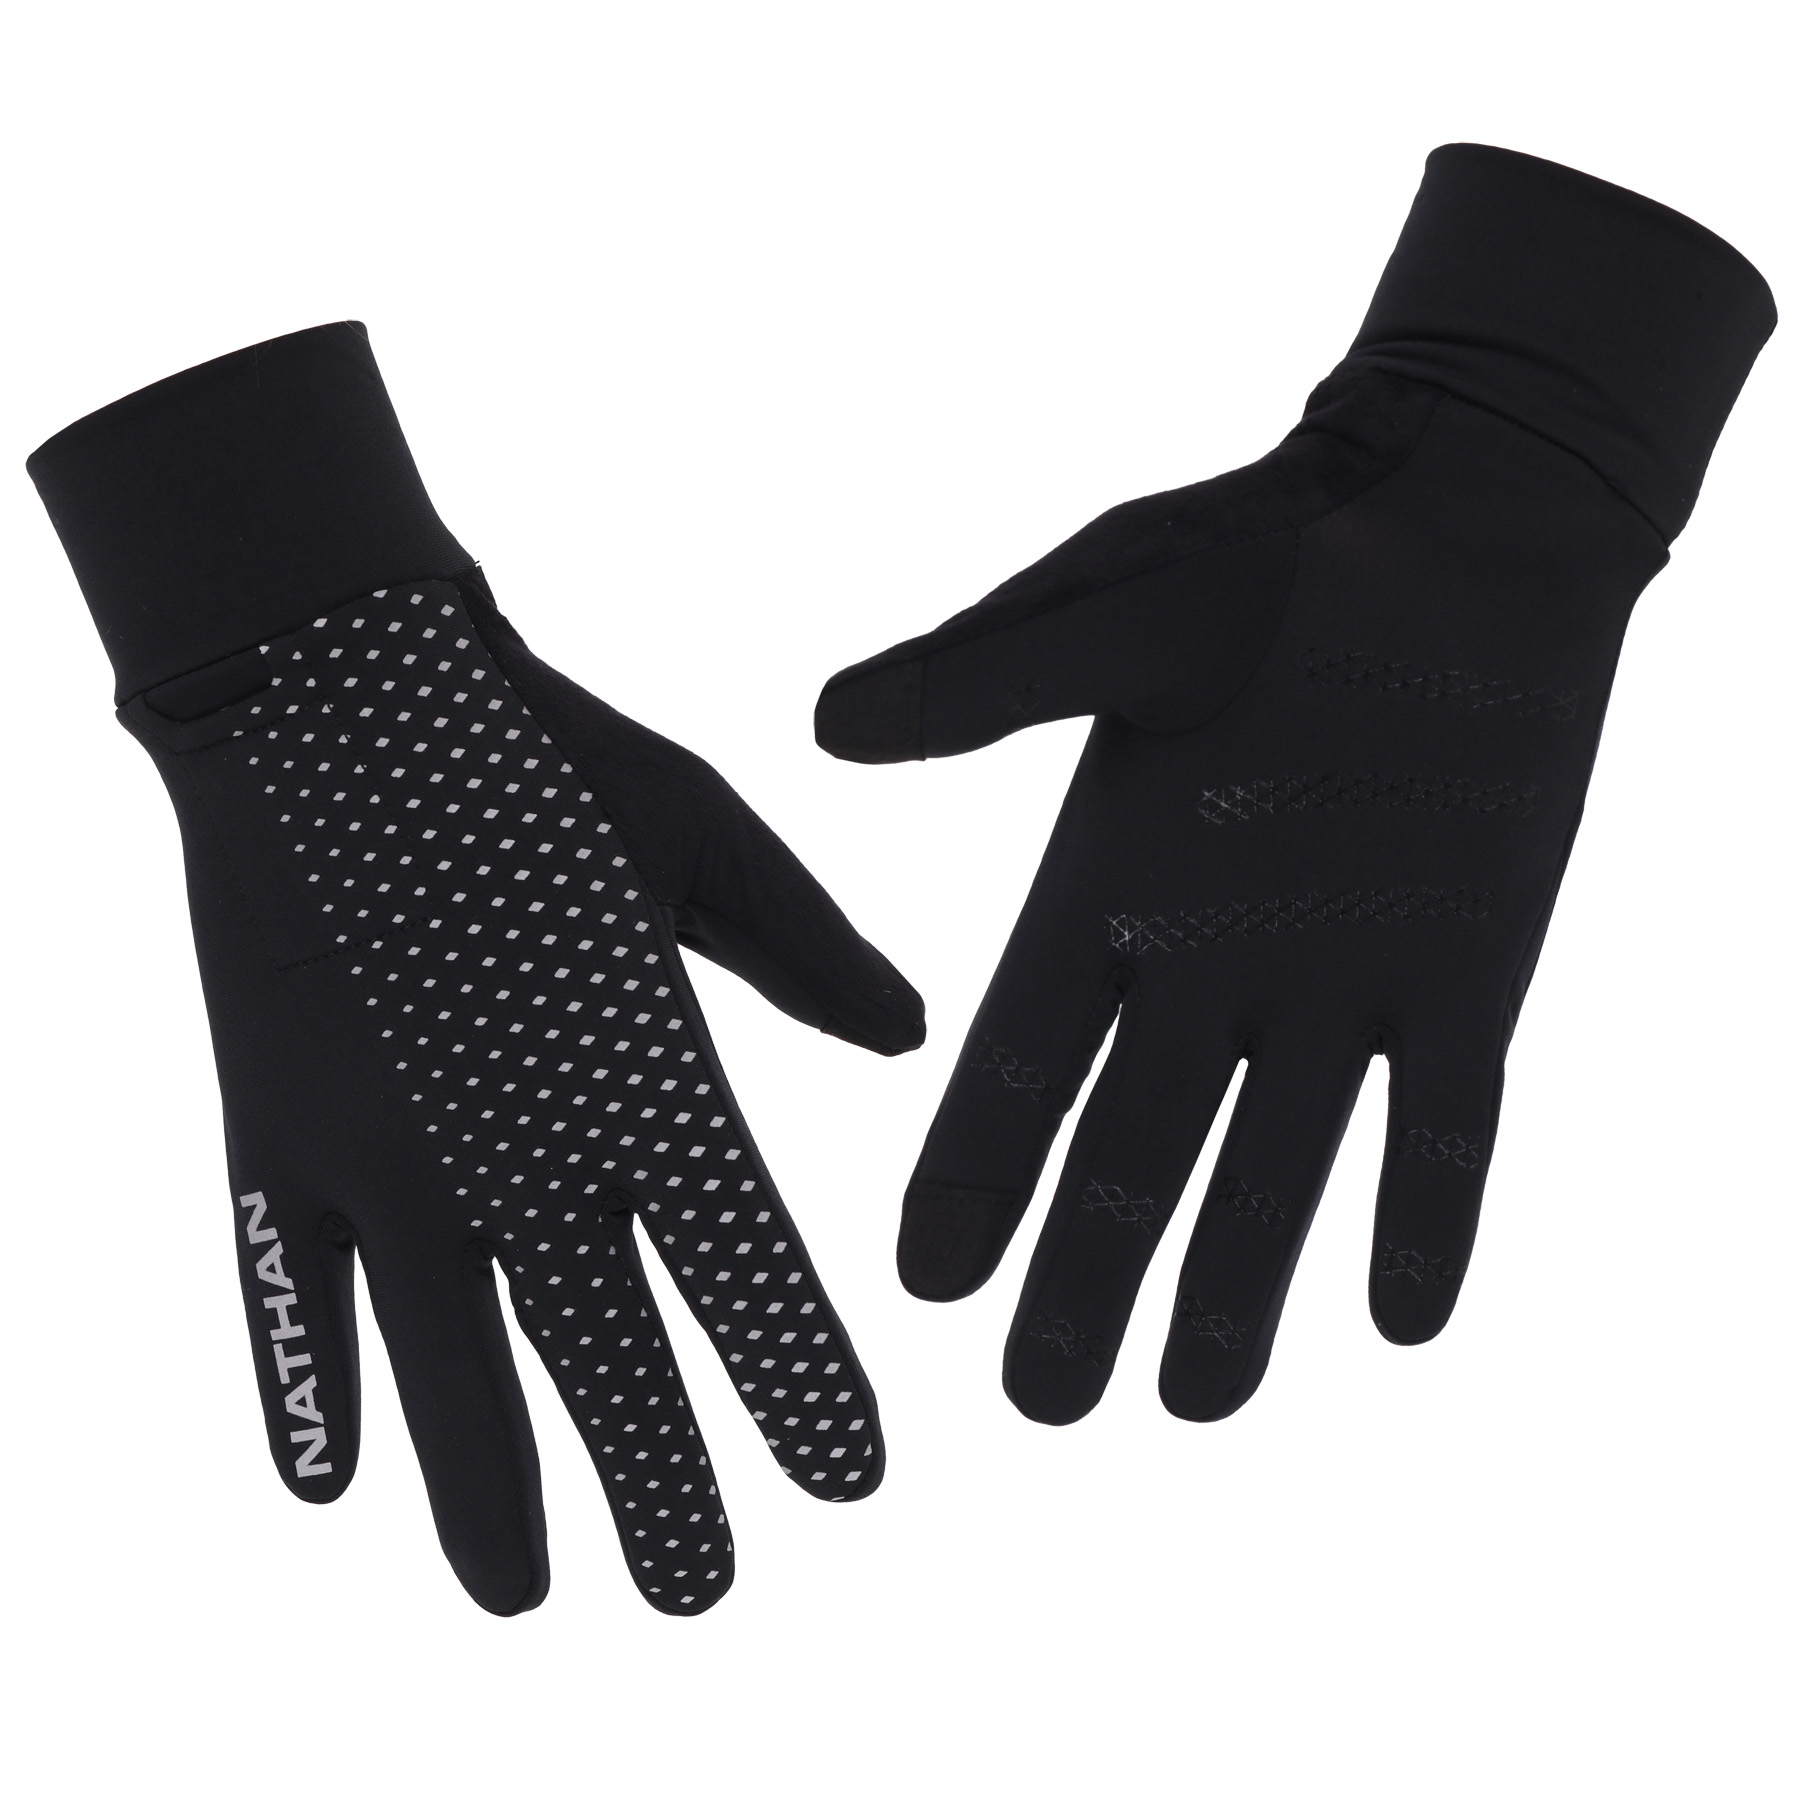 Produktbild von Nathan Sports Hypernight Reflective Handschuh - Black/Geo Print